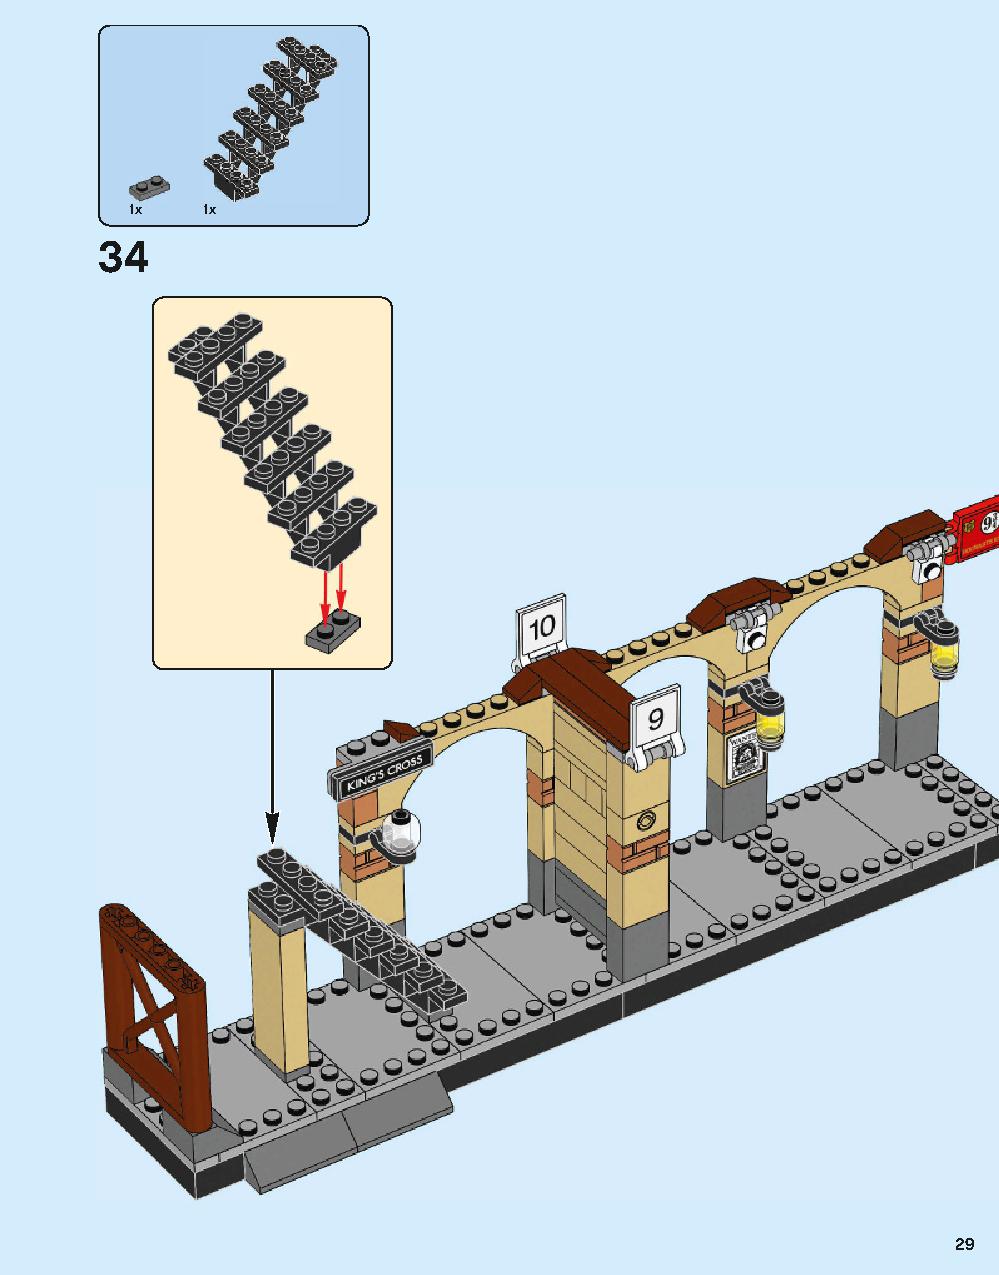 ホグワーツ特急 75955 レゴの商品情報 レゴの説明書・組立方法 29 page